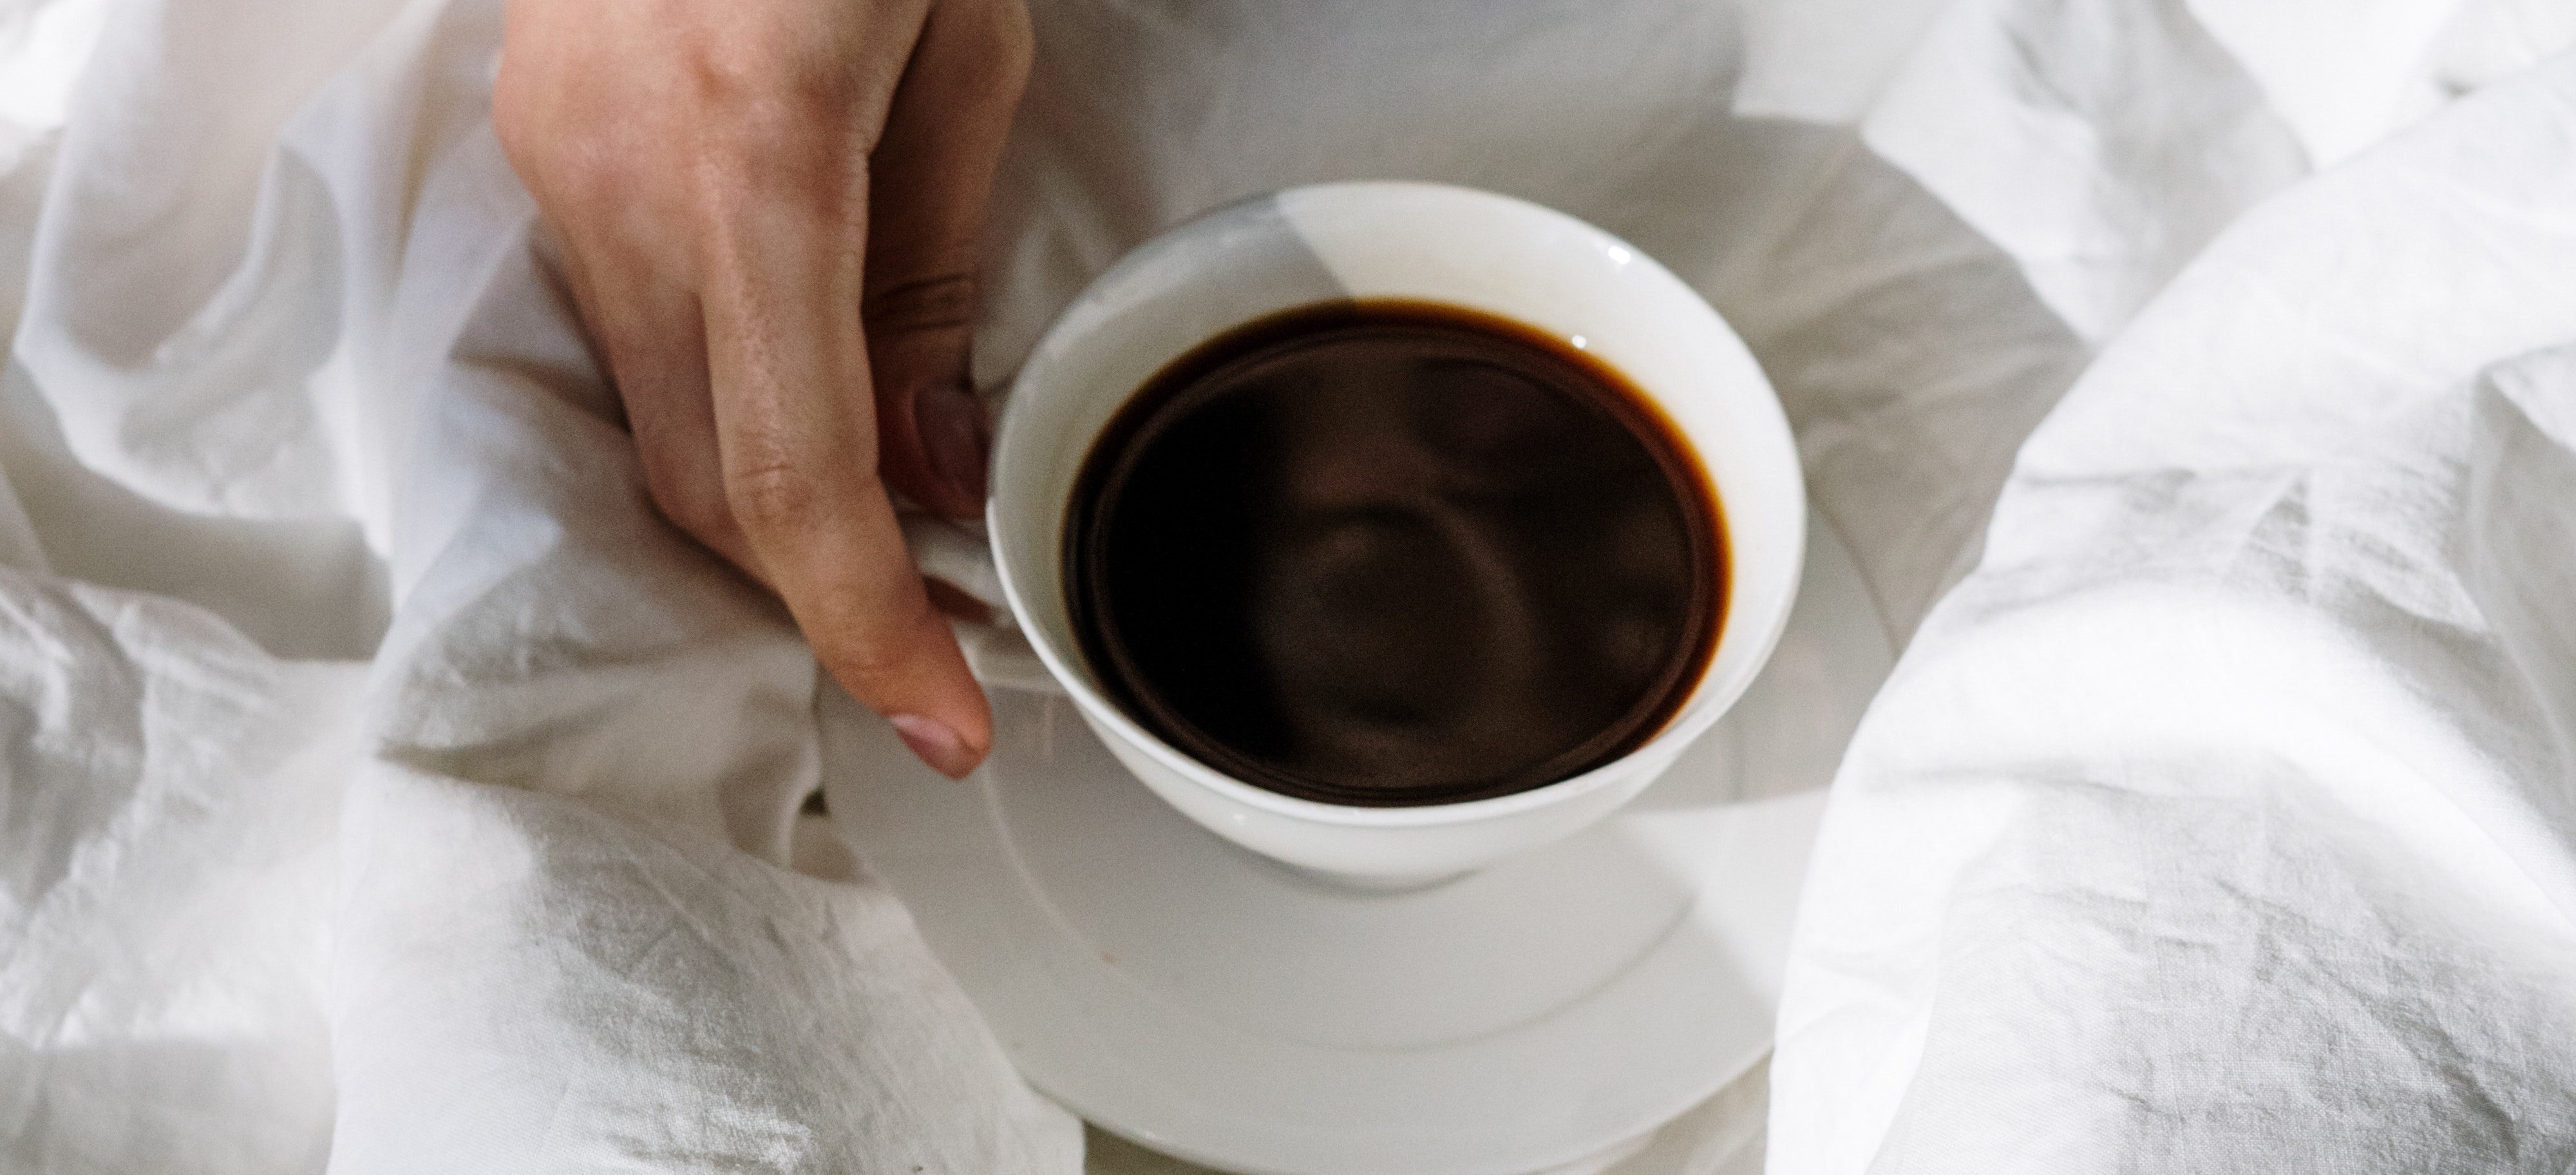 ¿Es malo tomar café en ayuna? No, pero hay dos tipos de personas que deberían tener más precaución